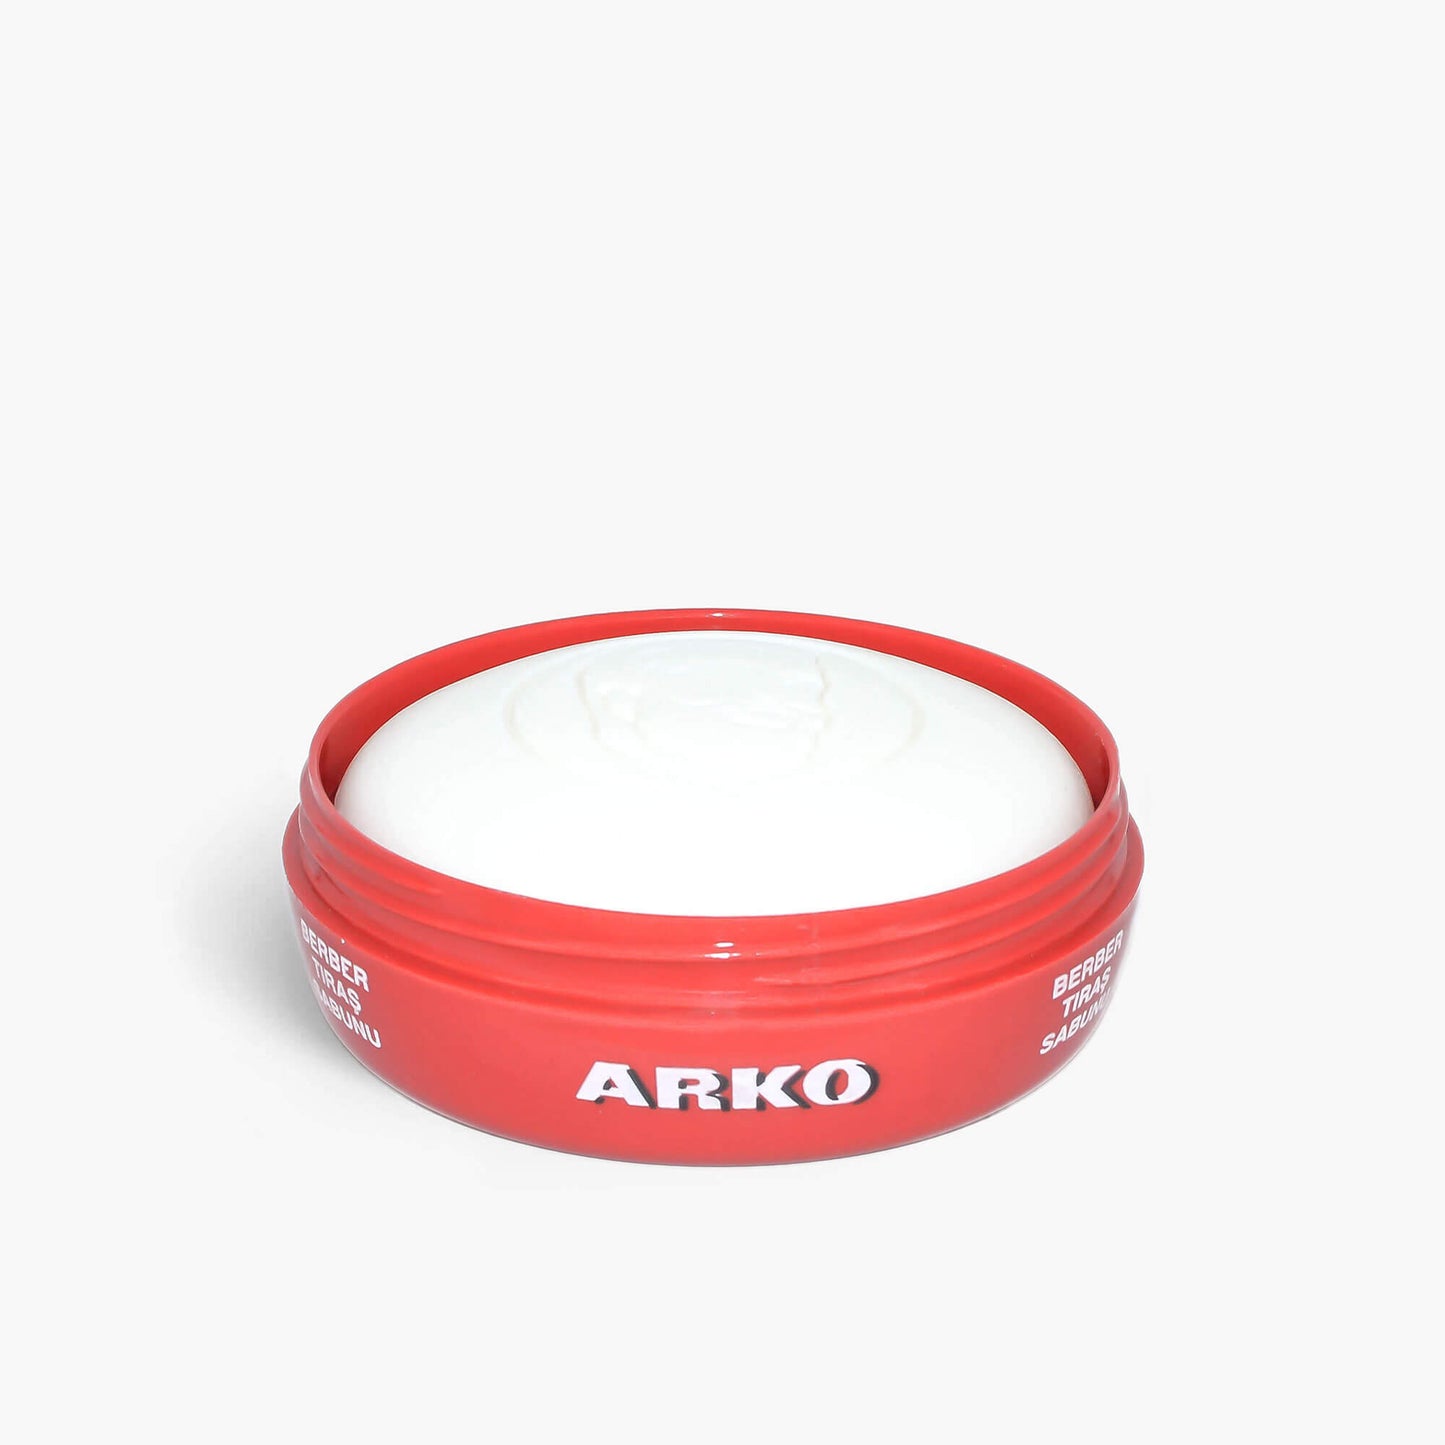 Arko Shaving Soap Bowl